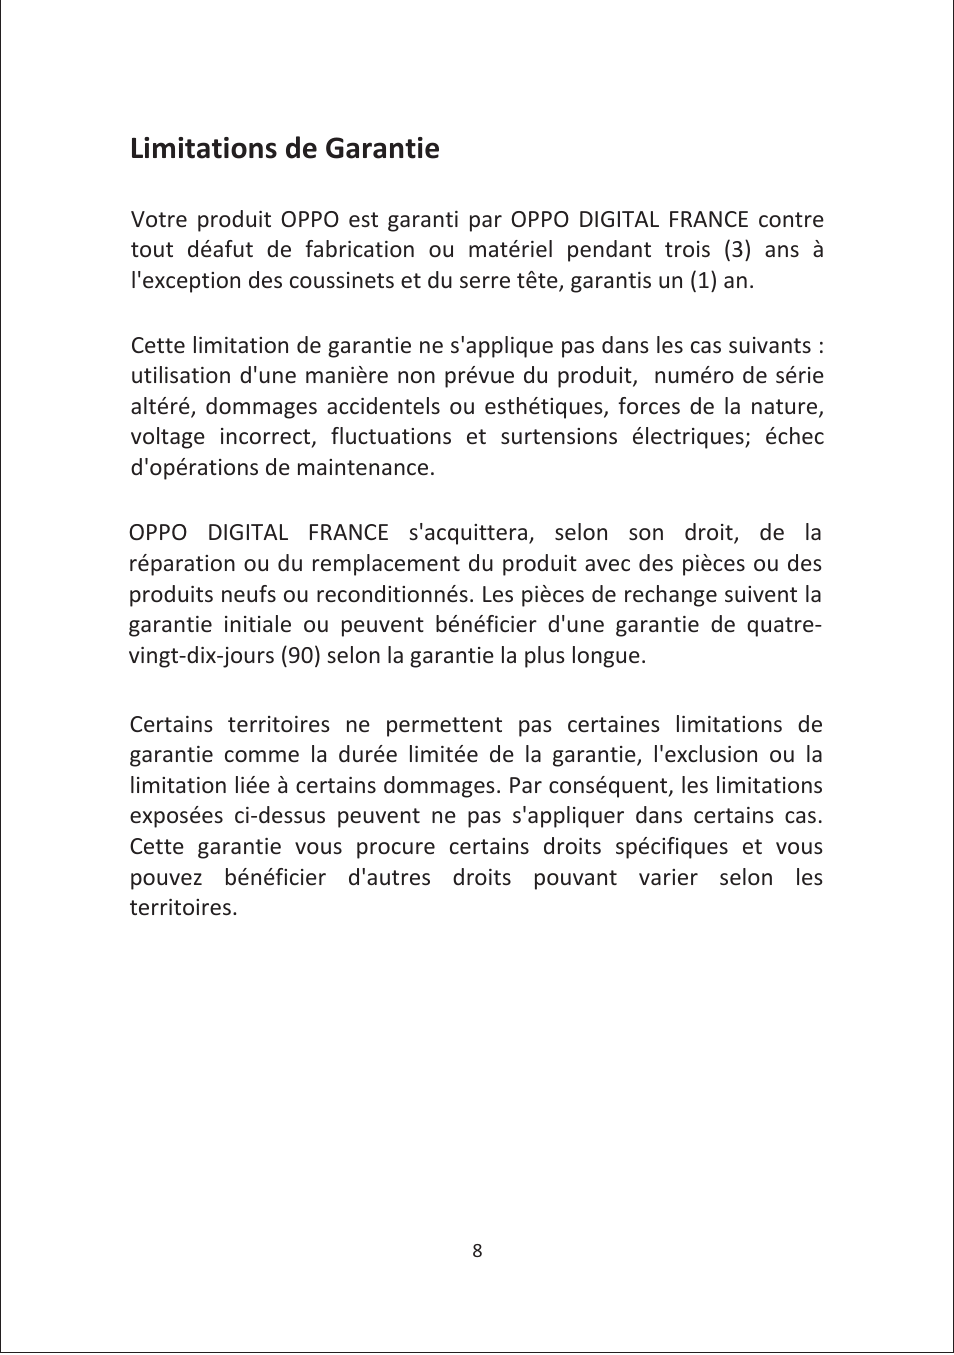 Limitations de garantie | Oppo PM-1 Manuel d'utilisation | Page 10 / 11